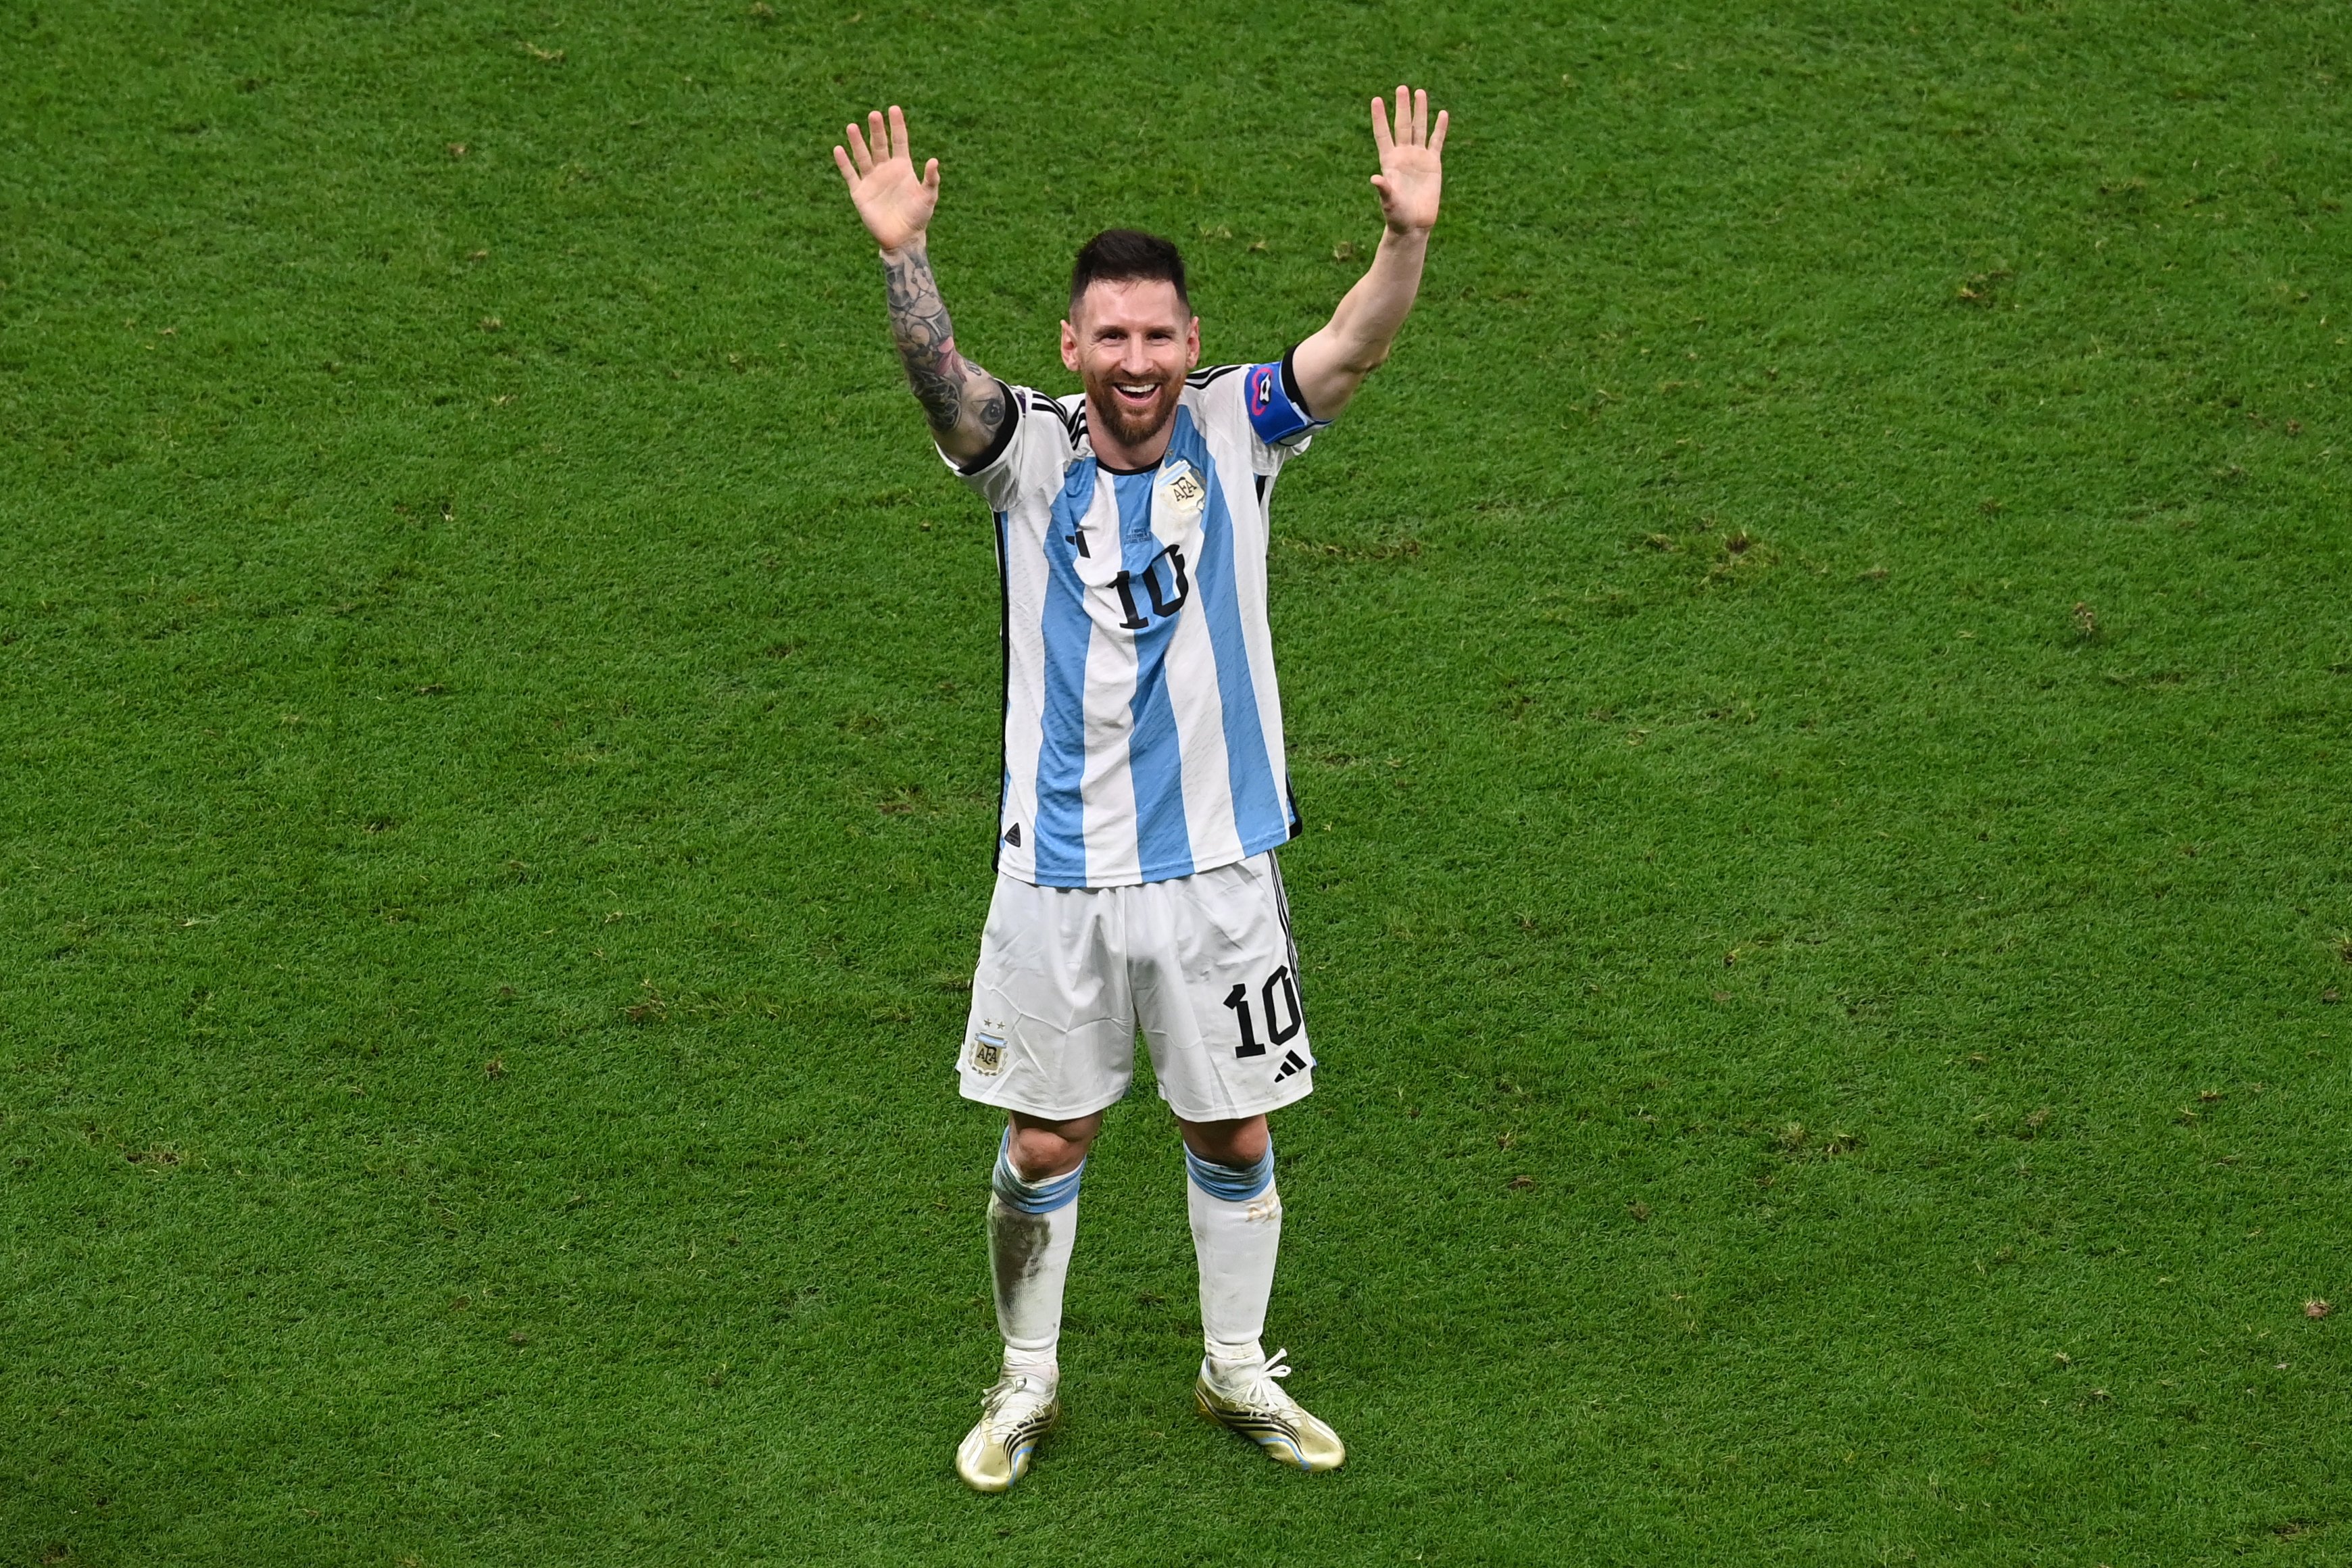 Los anti Messi, hundidos. Reacciones patéticas en la prensa deportiva española